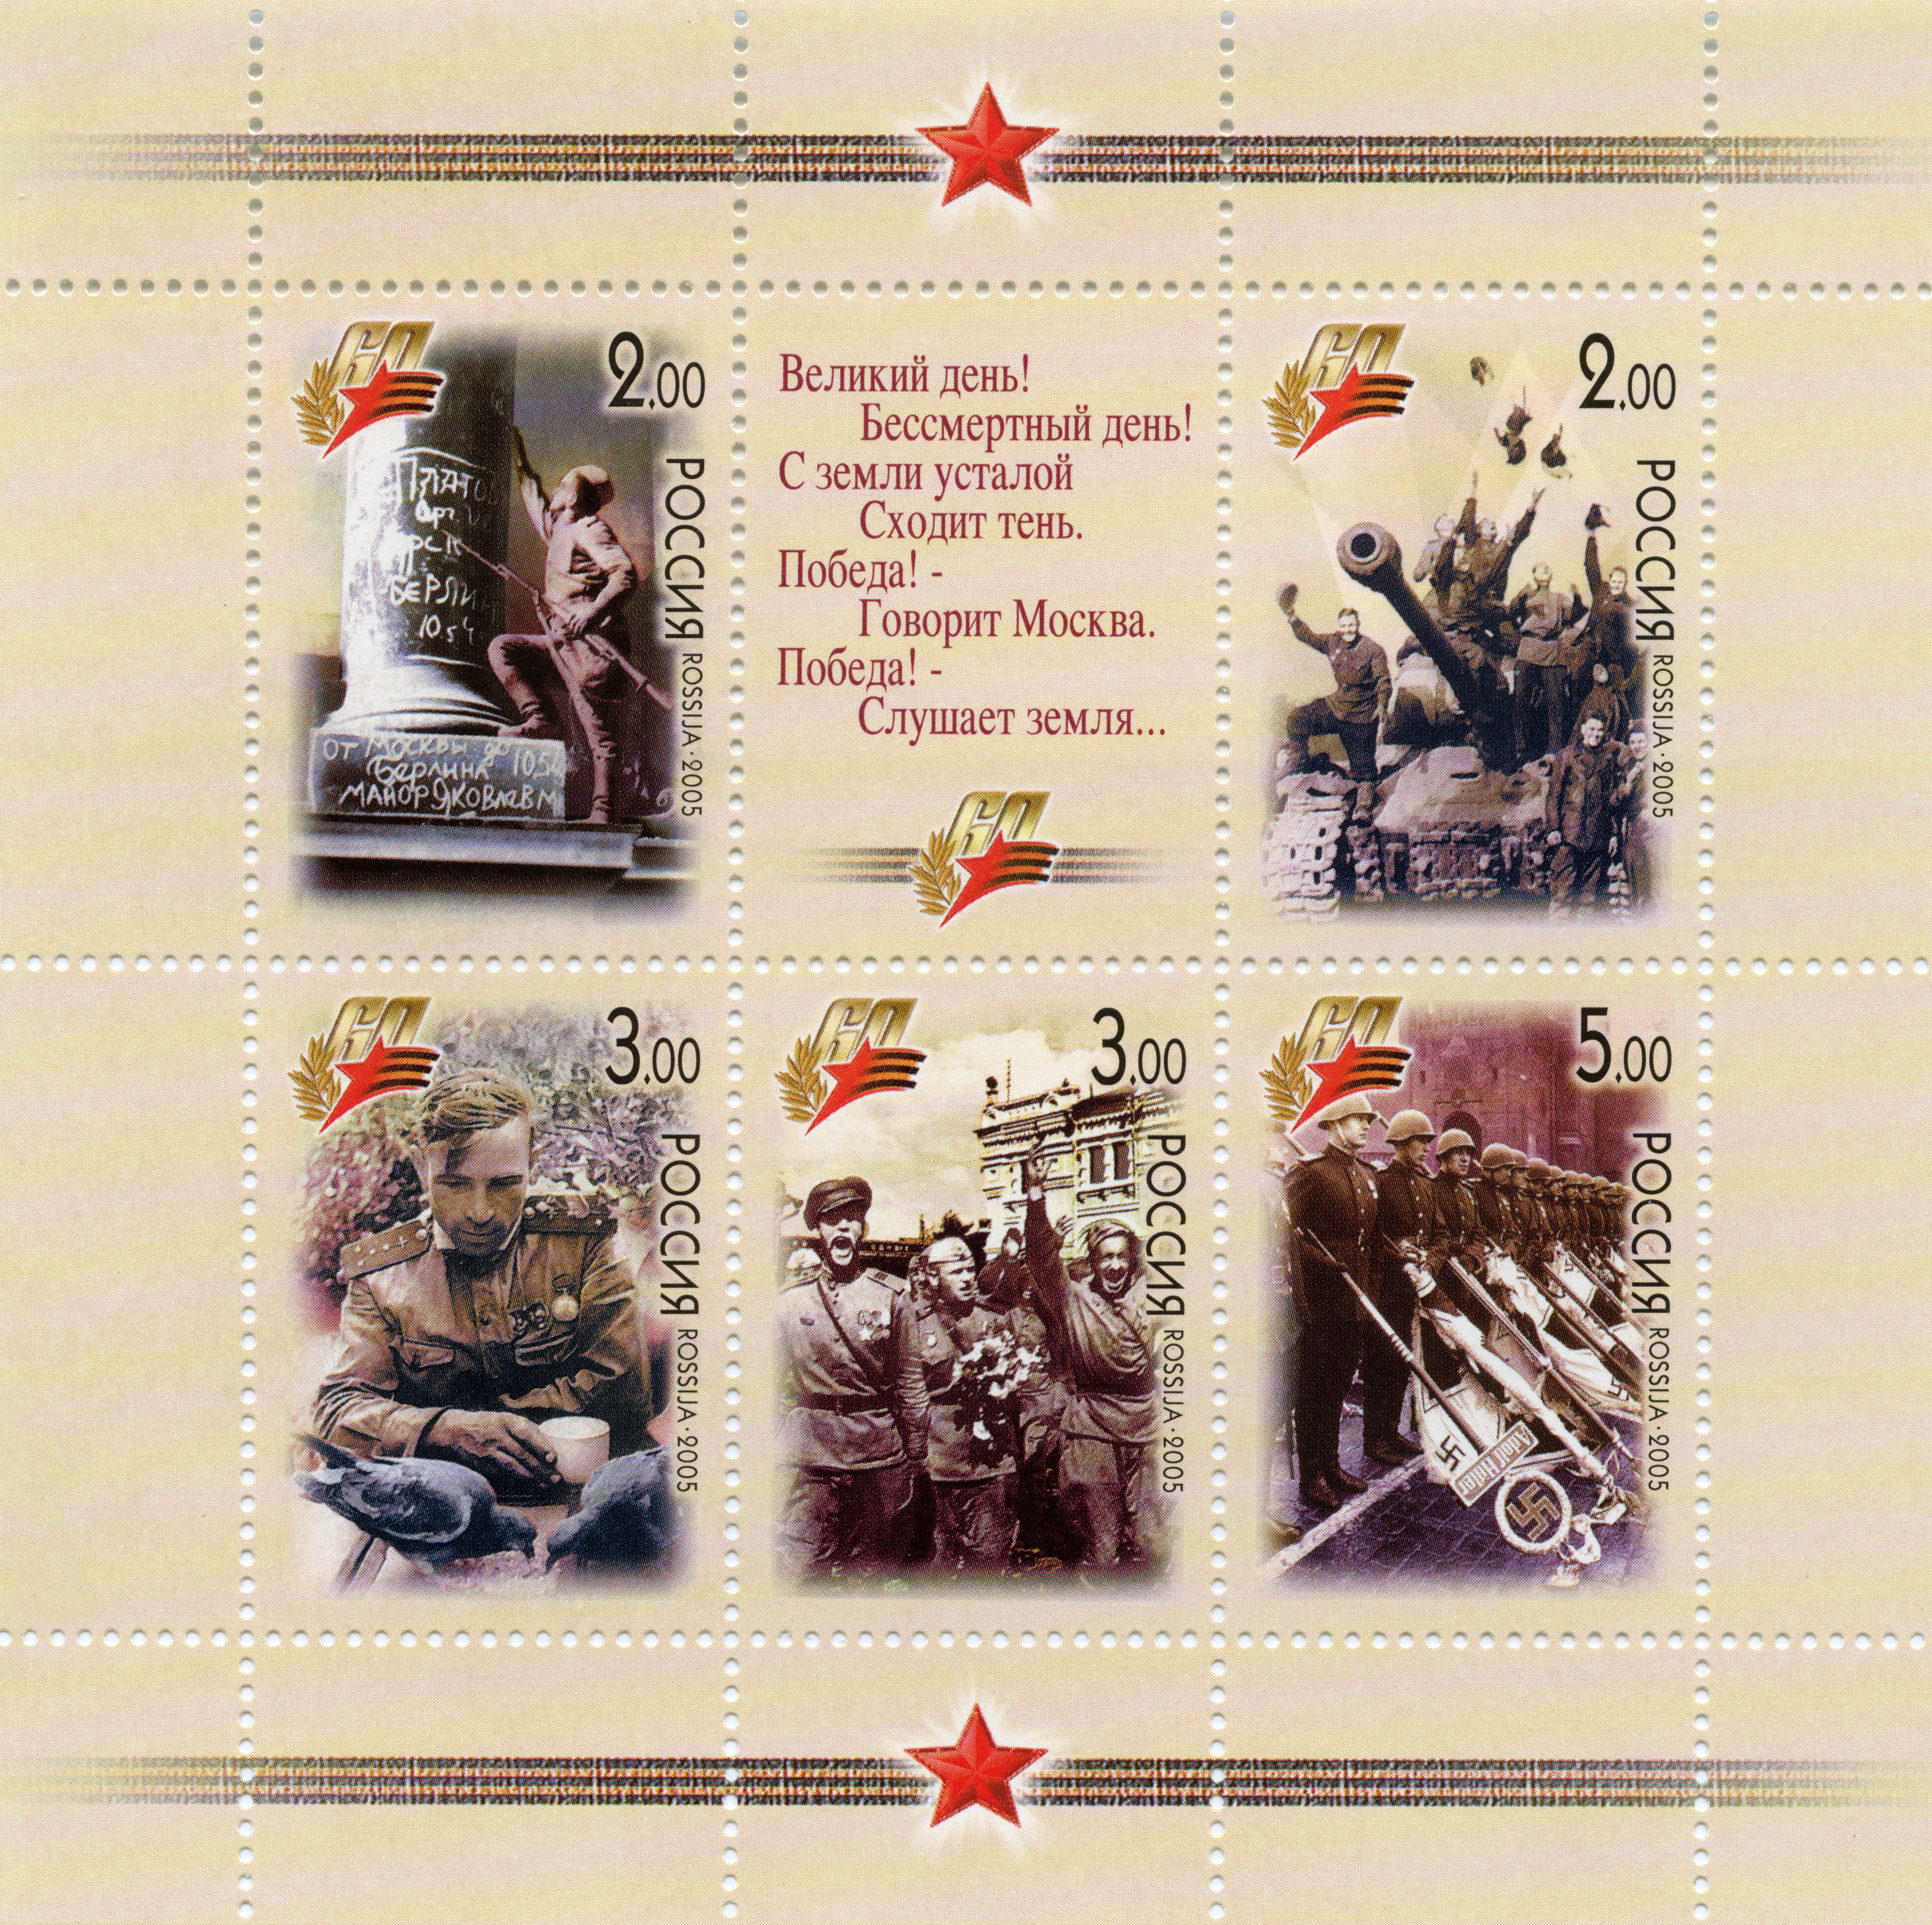 Briefmarkenblock "60. Jahrestag des Sieges im Großen Vaterländischen Krieg 1941-1945", Russland, 2005 (Museum Berlin-Karlshorst CC BY-NC-SA)